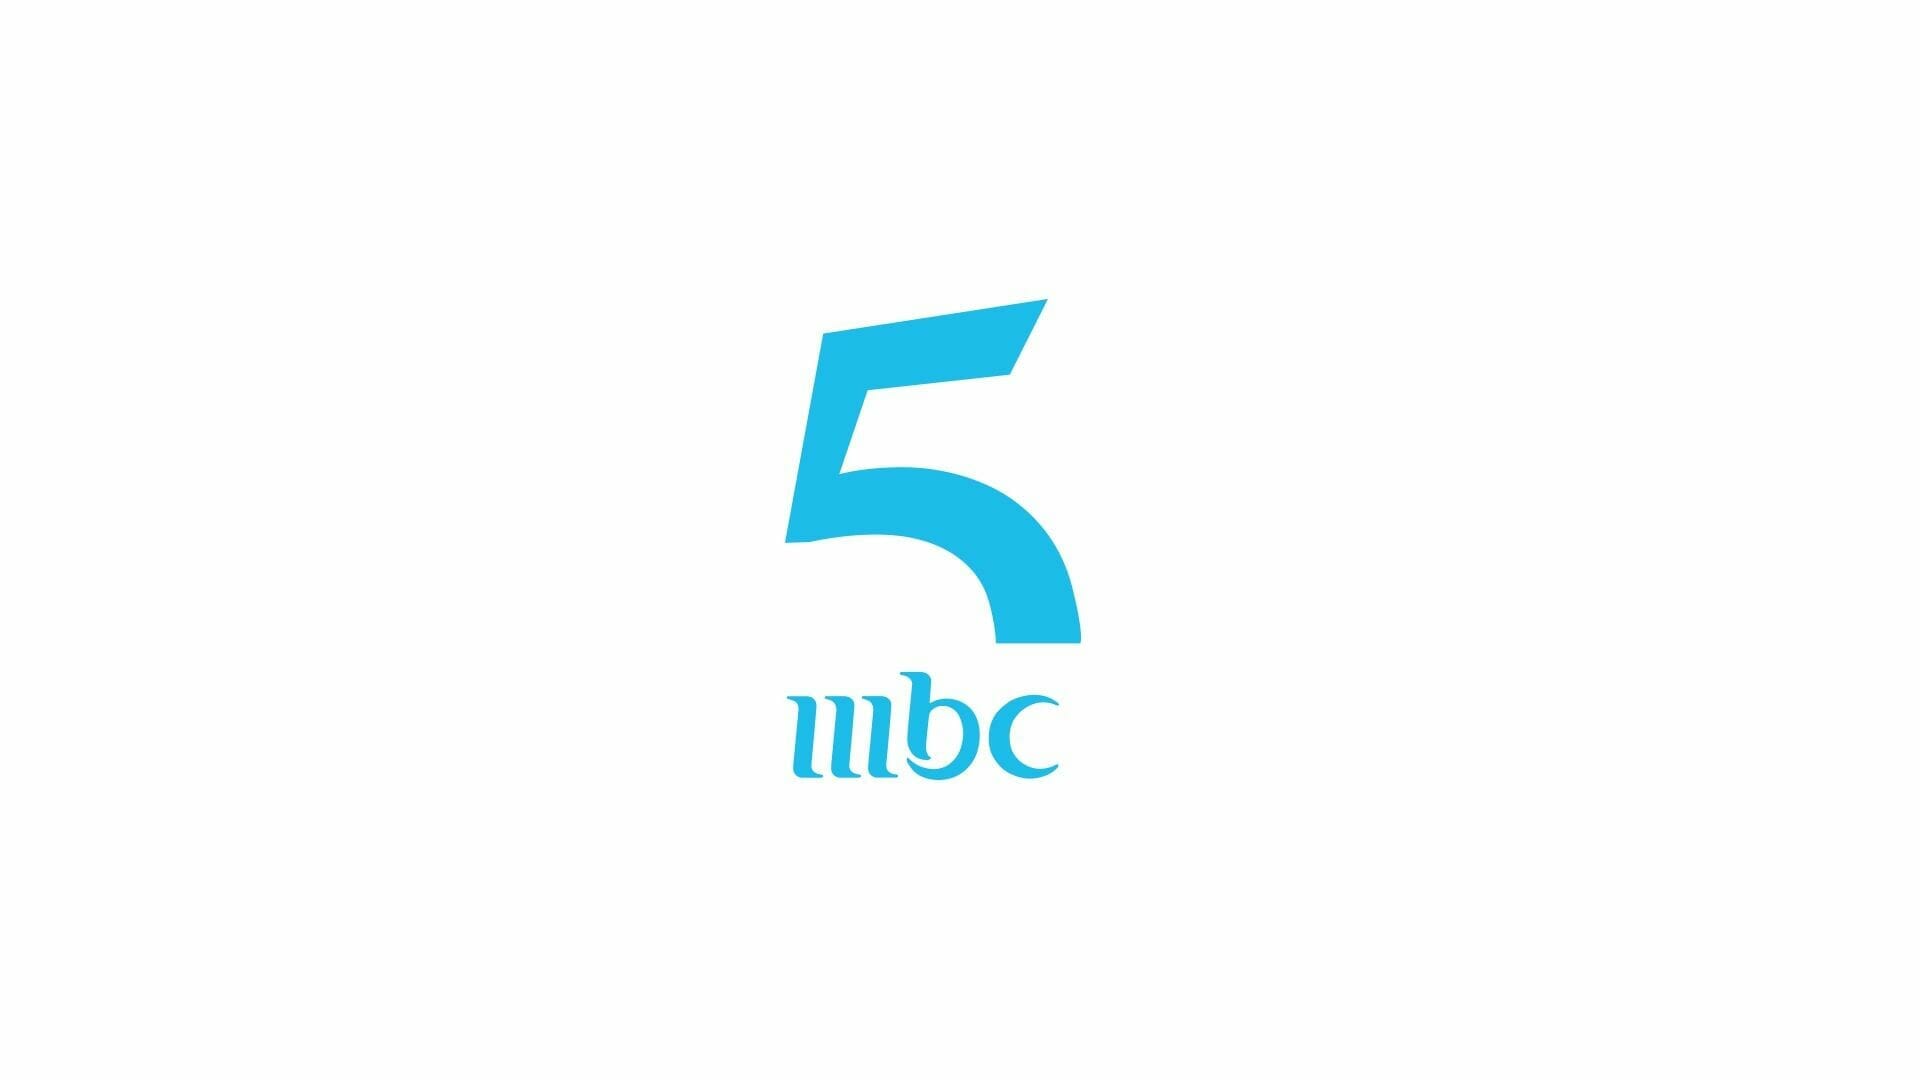 تردد قناة ام بي سي 5 MBC الفضائية الجديد 2022 ترددات قنوات MBC ام بي سي